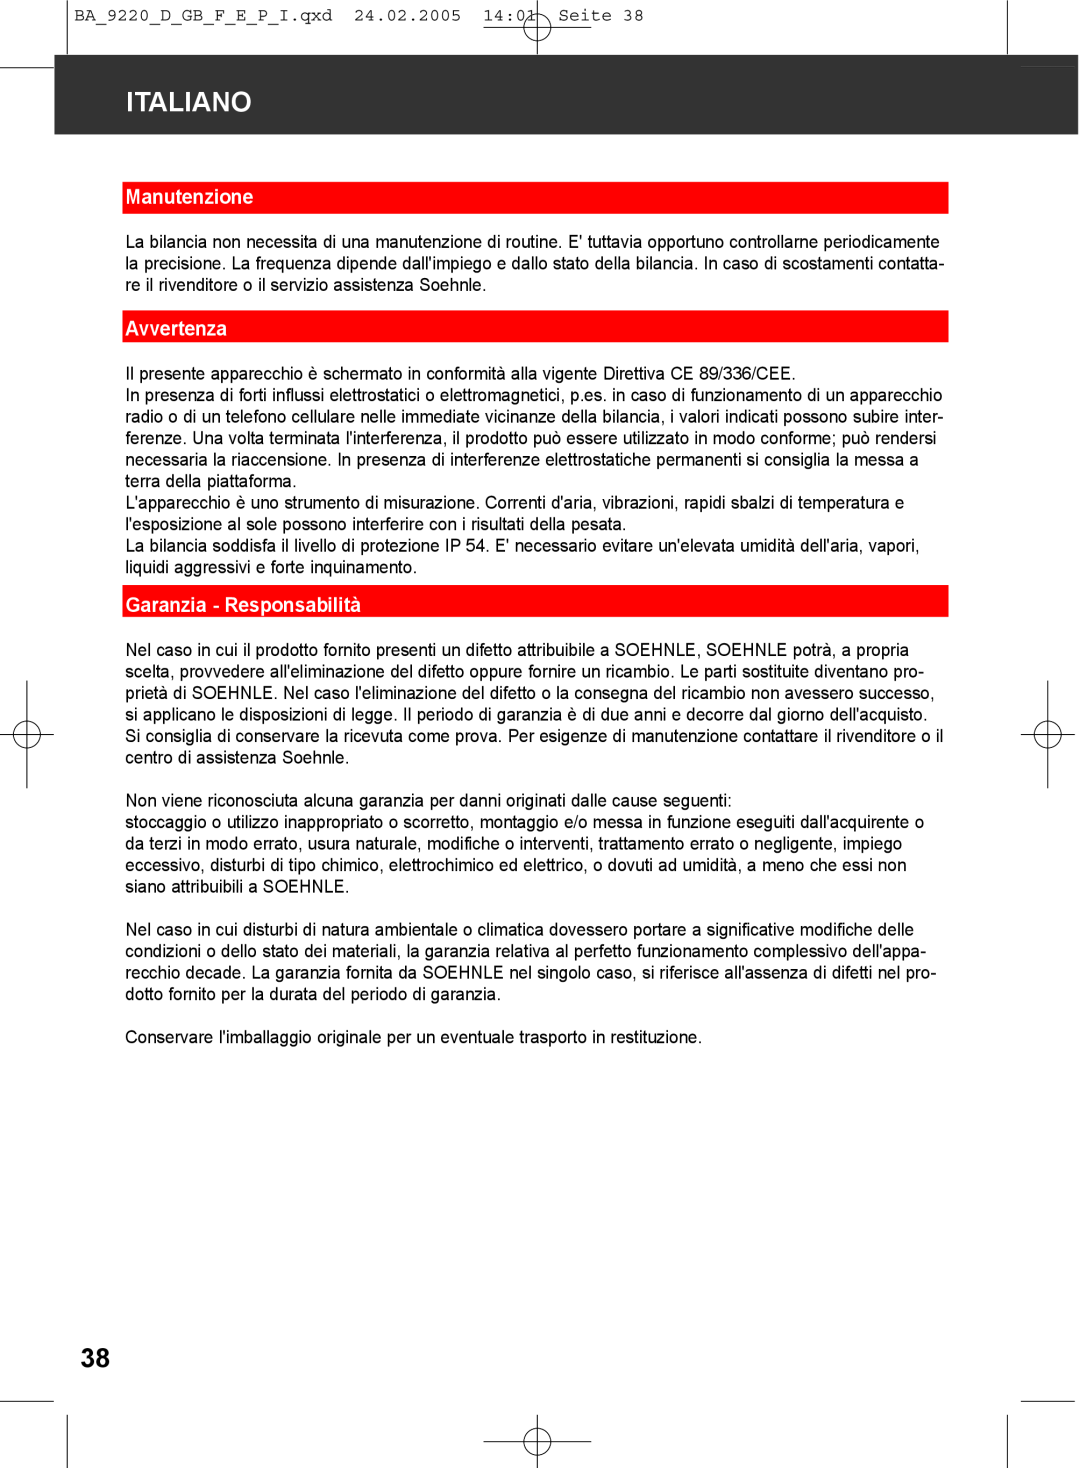 Soehnle 9220 manual Manutenzione, Avvertenza, Garanzia - Responsabilità, Italiano 